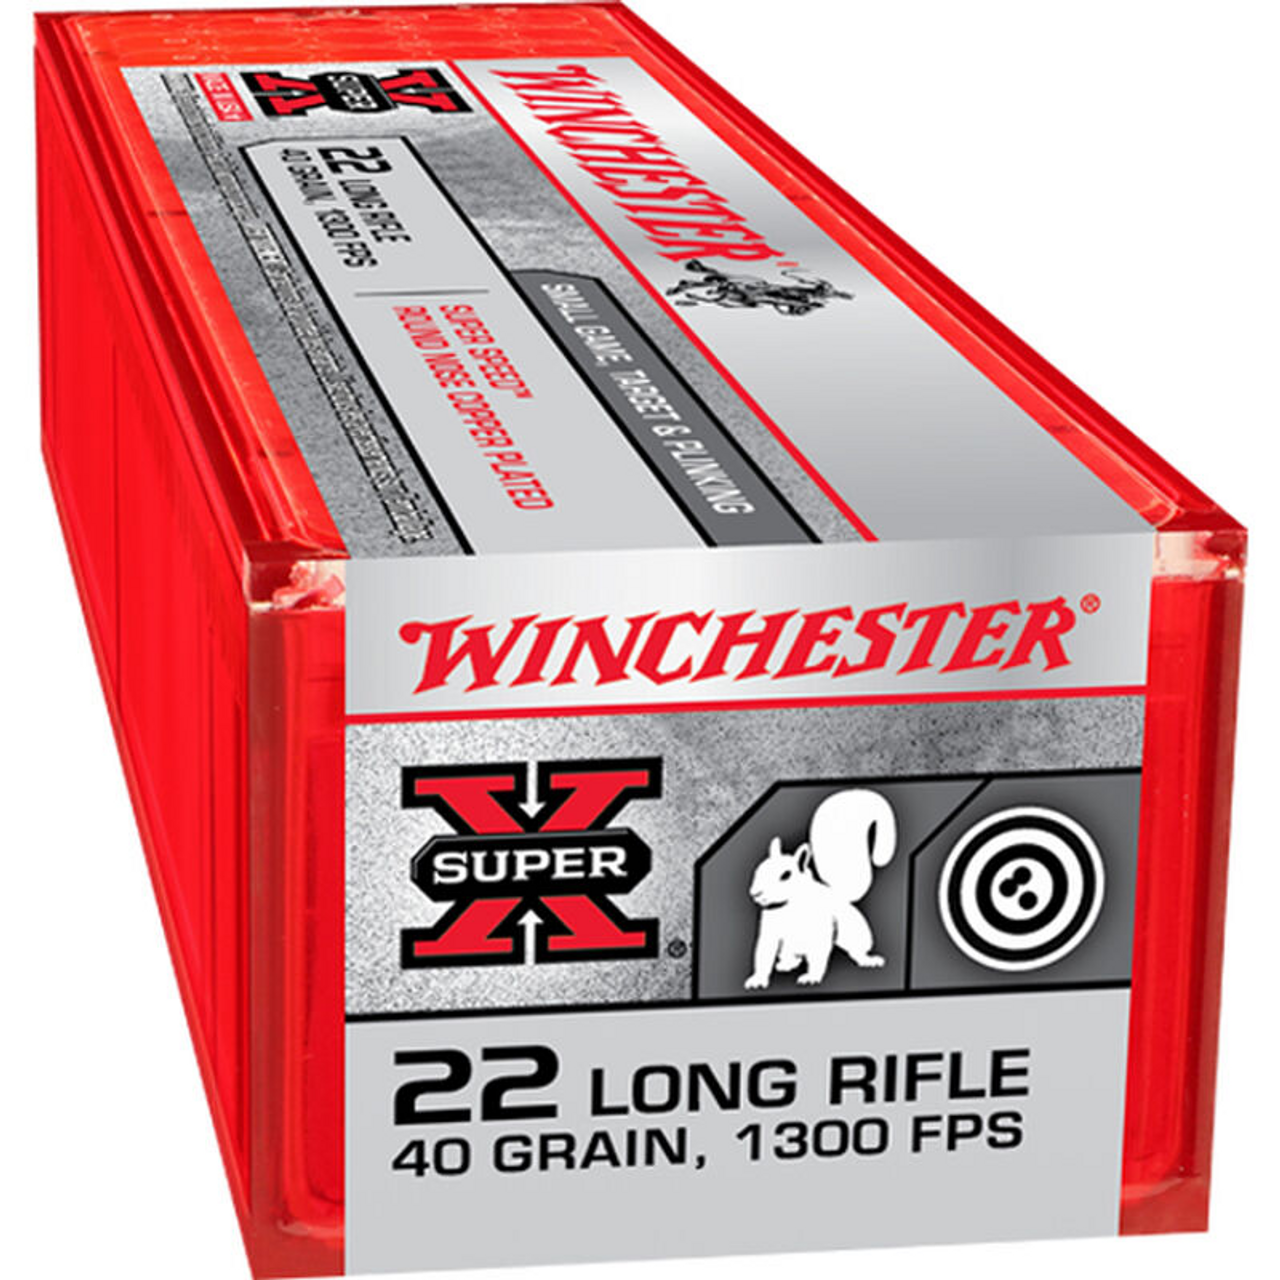 Winchester Super-X Superspeed 22 LR 40 gr LRN, 100 Rnds